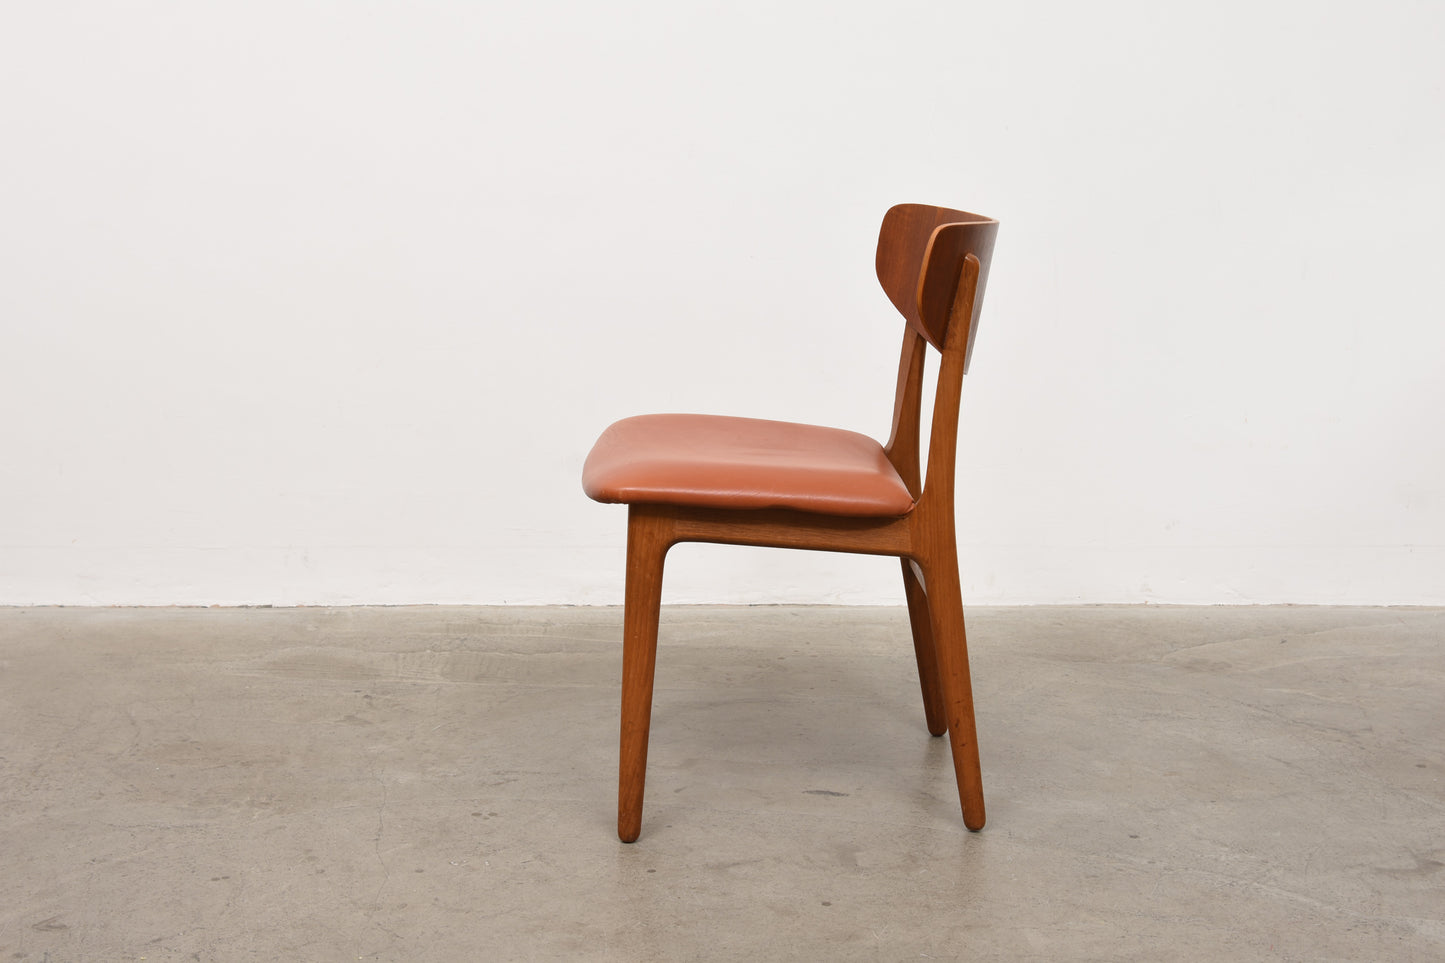 1960s Danish teak + oak chair